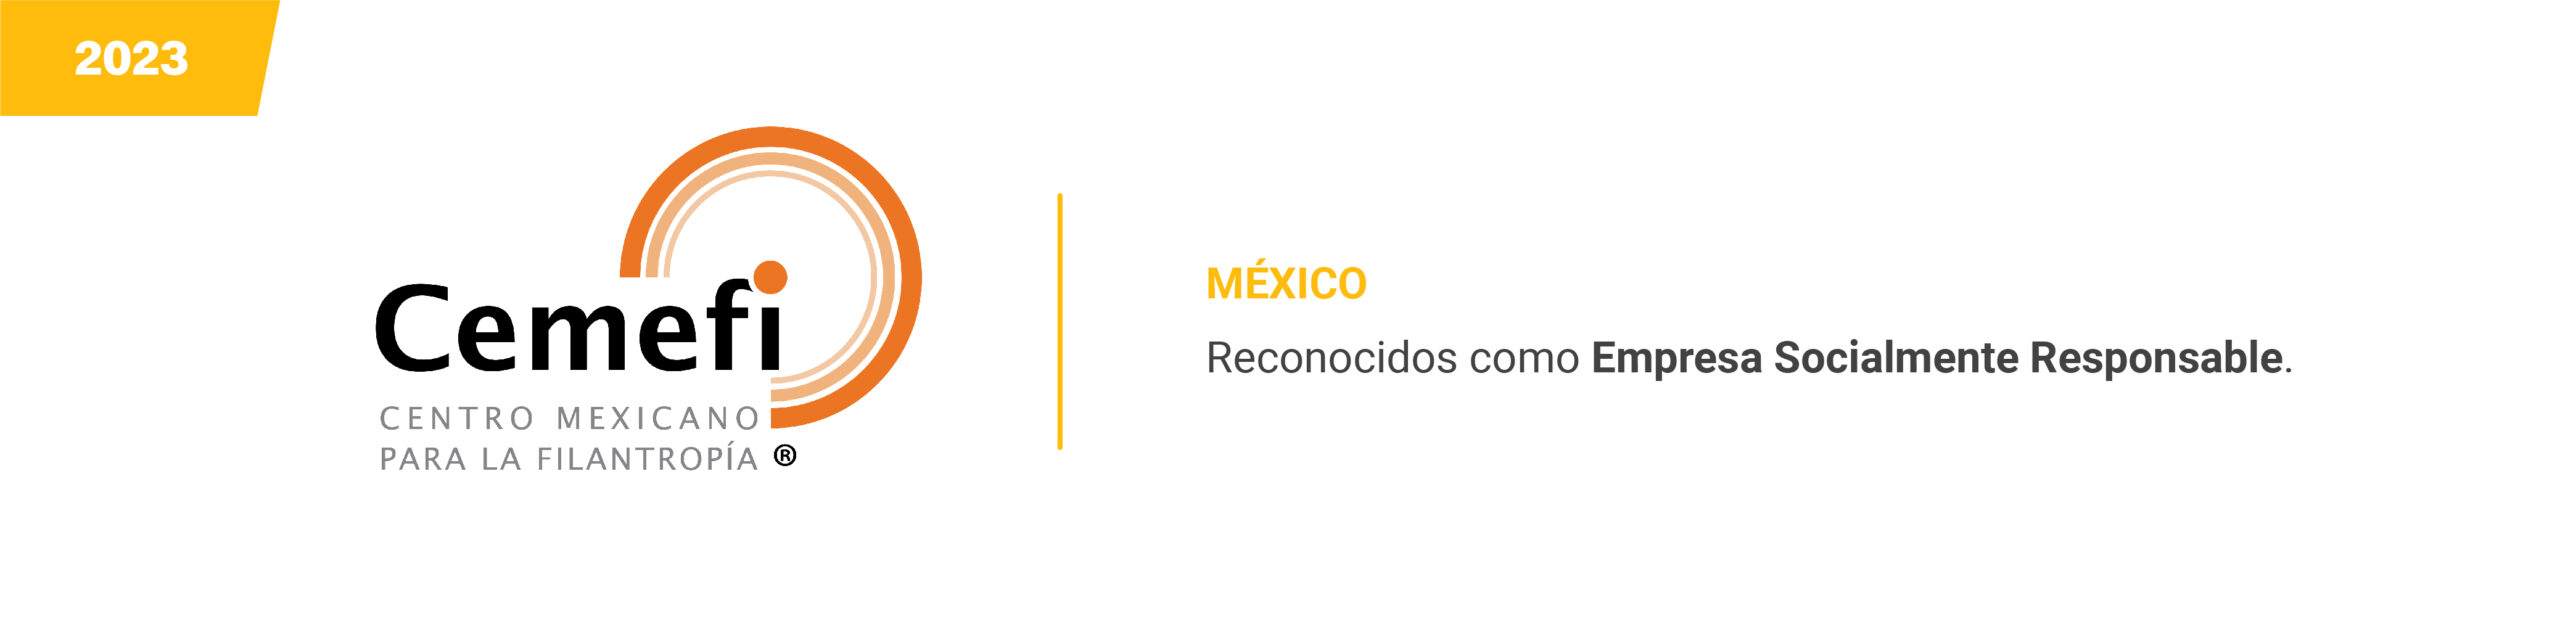 Cemefi - Mexico 2023